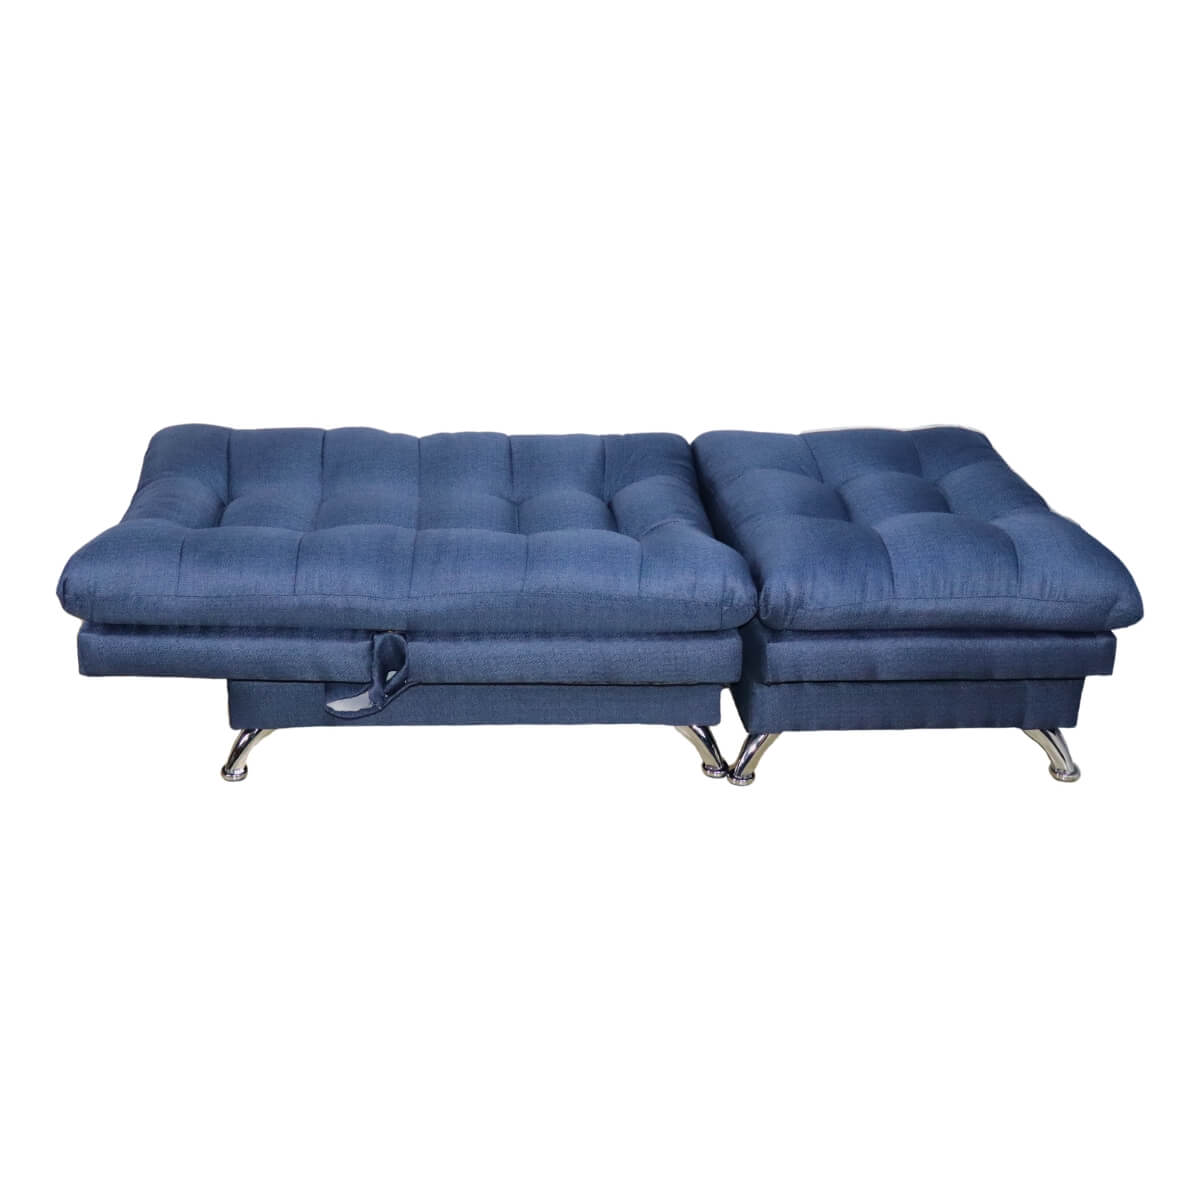 comprar sillón con otoman pequeño moderno azul cerca de mi norval #color_marino